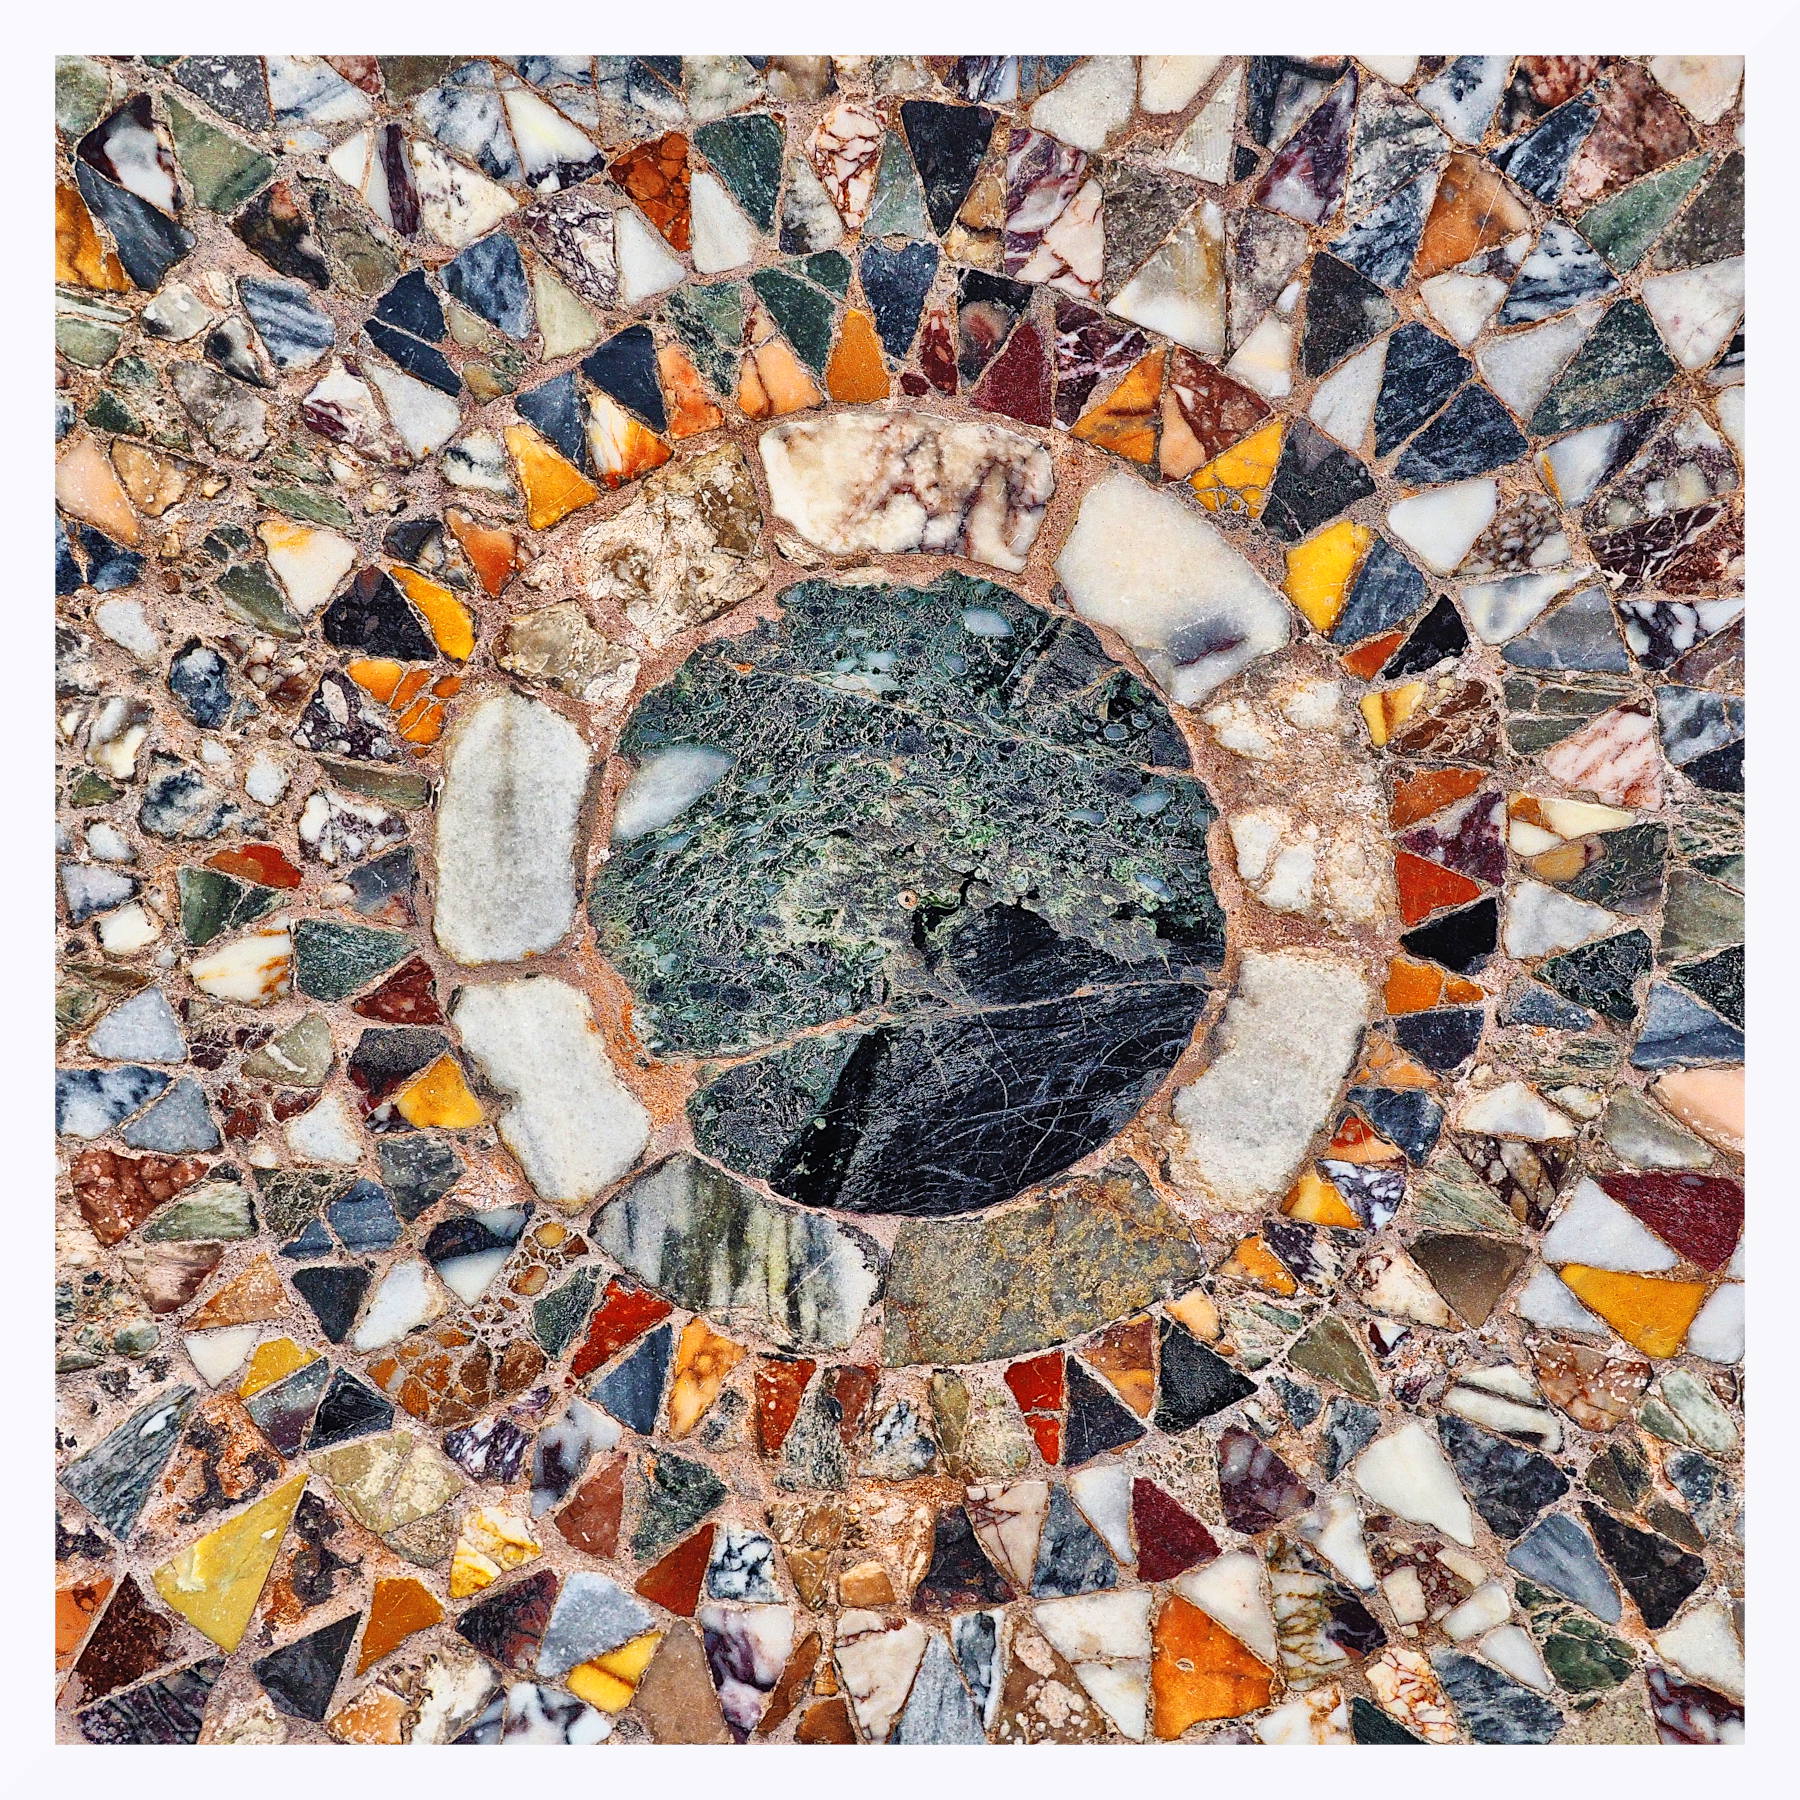 Dettaglio di mosaico pavimentale